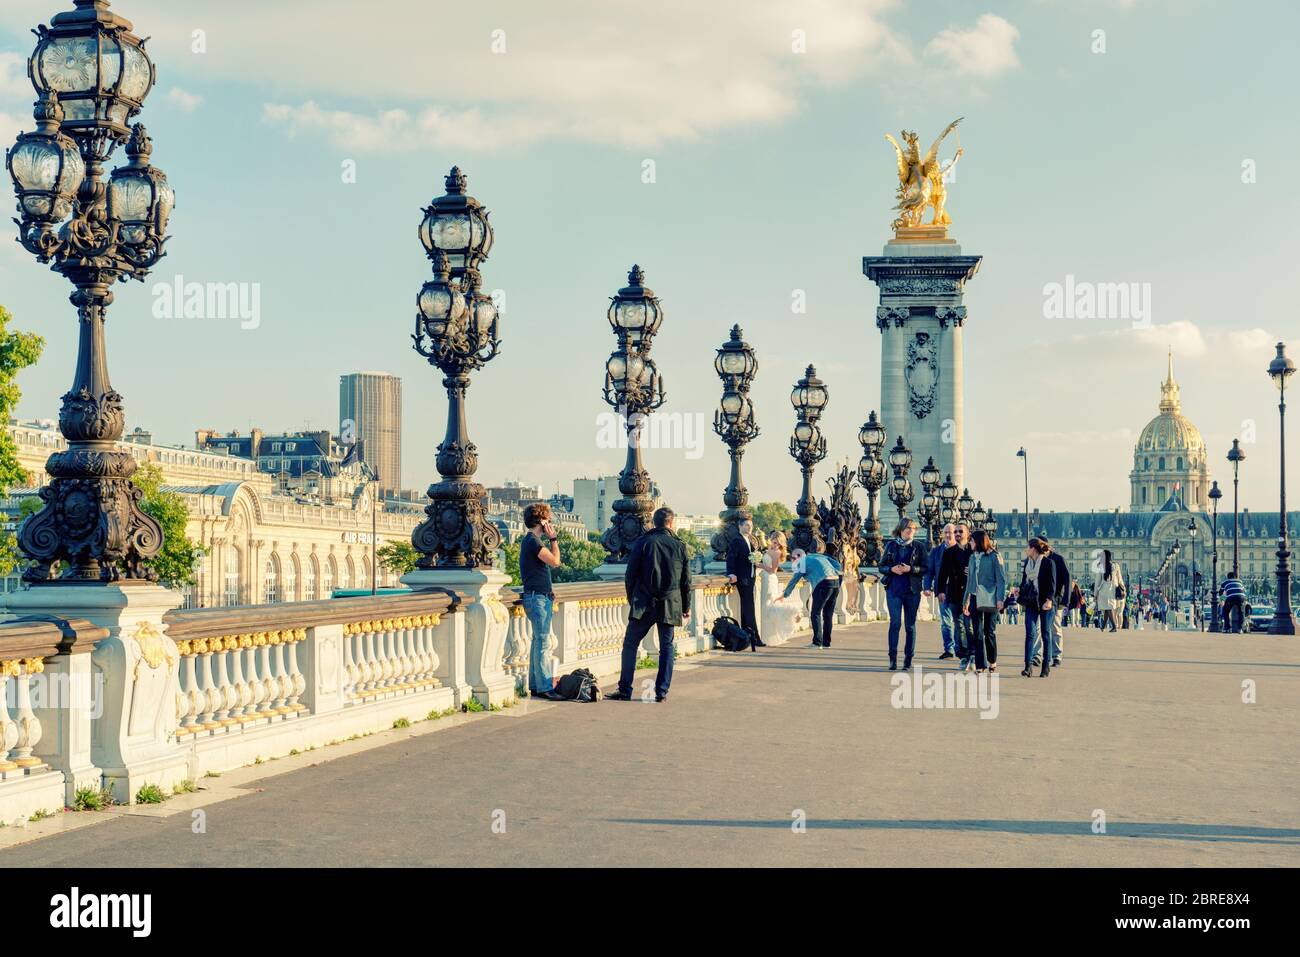 PARIS - 20. SEPTEMBER 2013: Blick auf die Brücke Alexandre III in Paris. Die Alexandre III Brücke ist eines der beliebtesten Touristenziele in Paris. Stockfoto